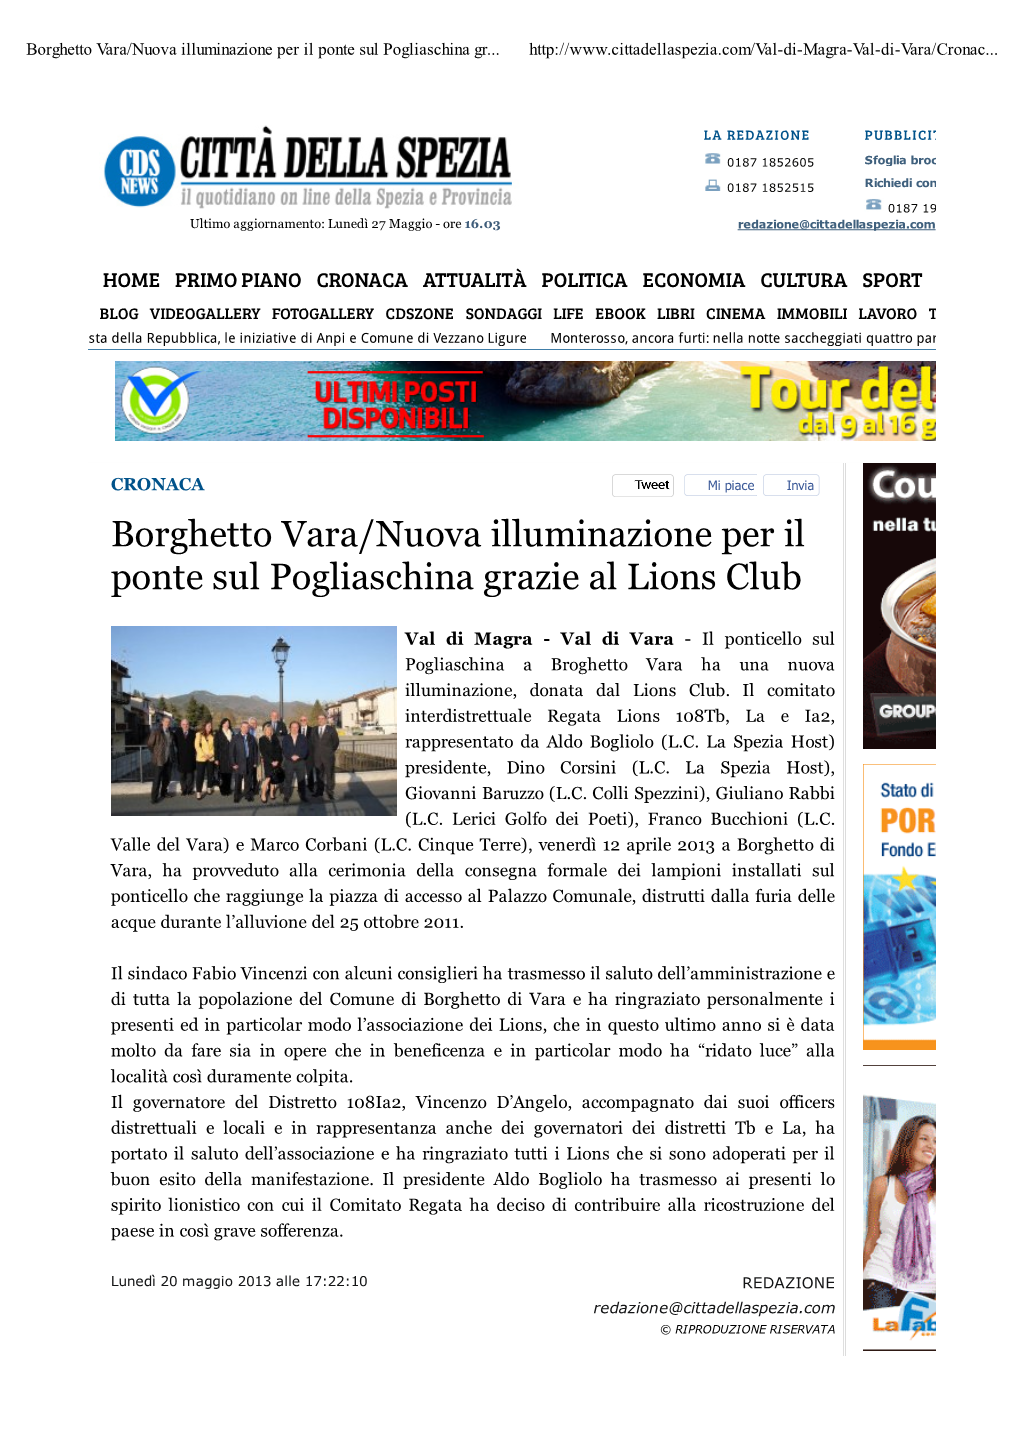 Borghetto Vara/Nuova Illuminazione Per Il Ponte Sul Pogliaschina Gr